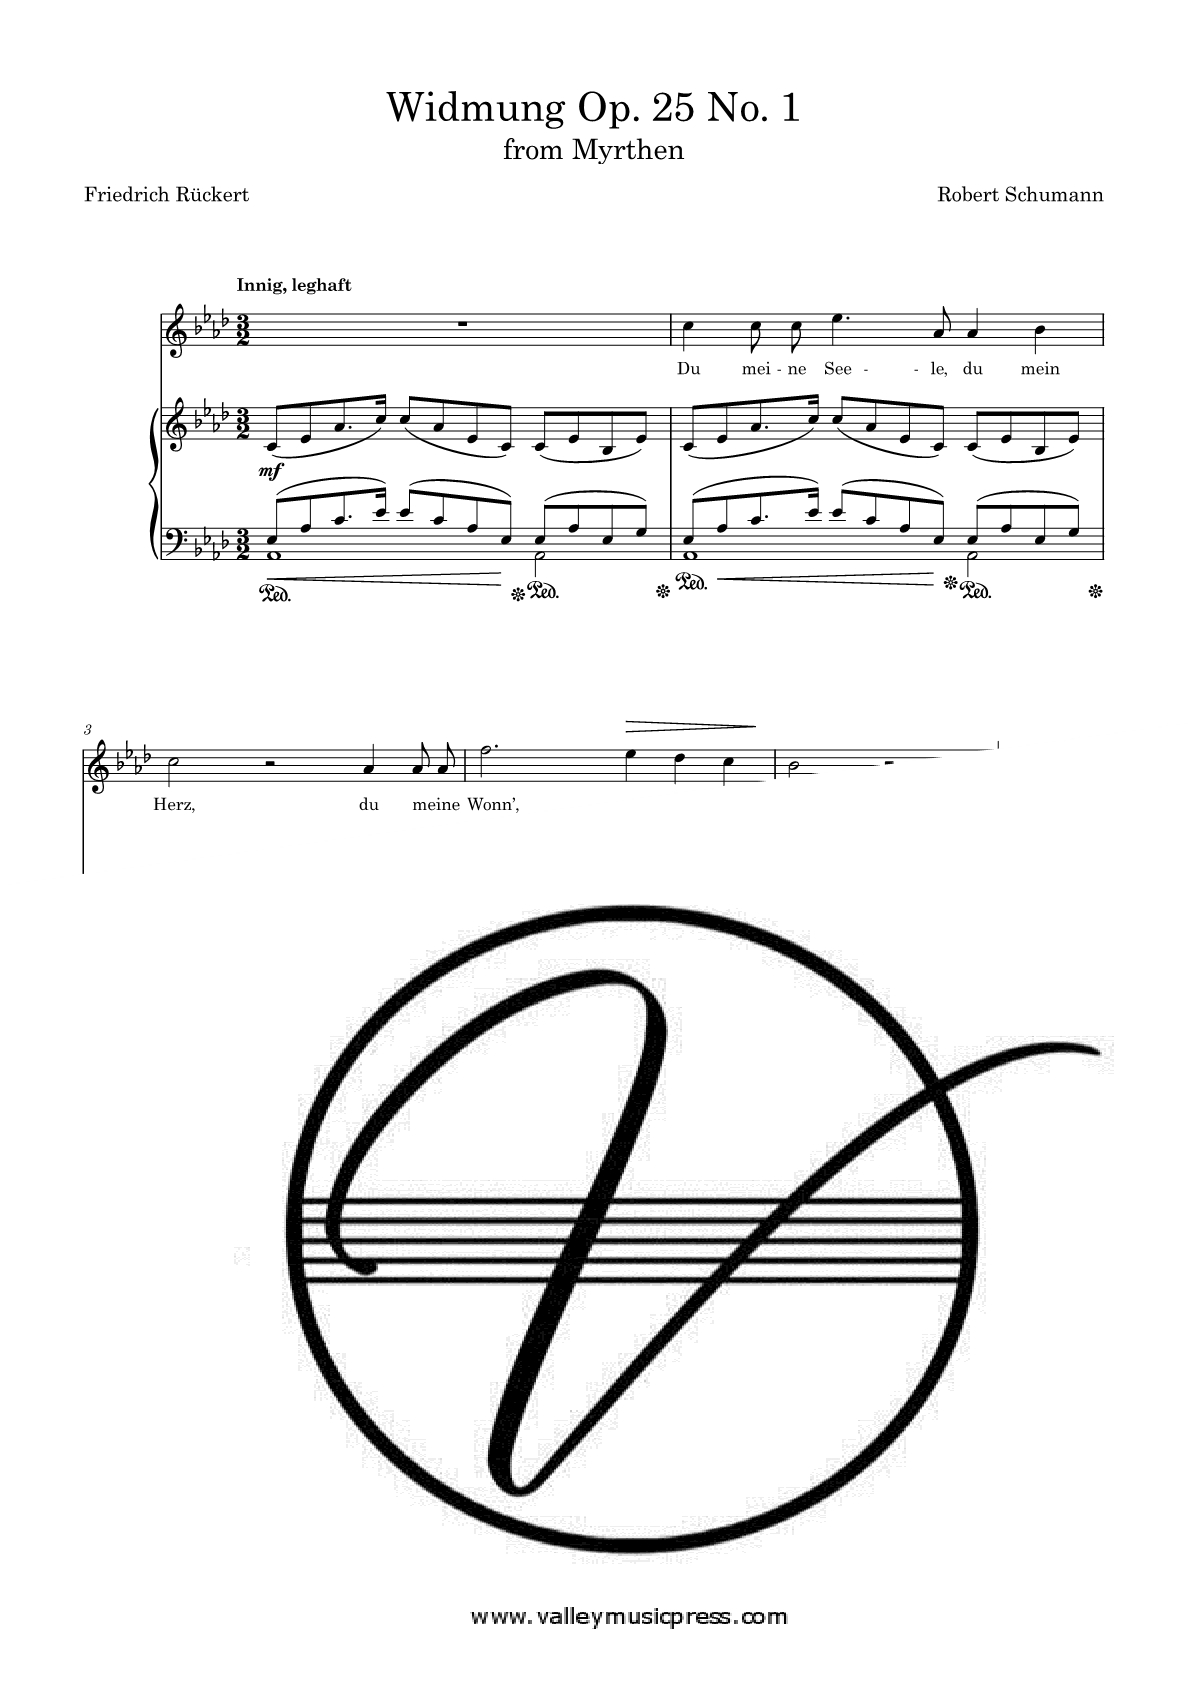 Schumann - Widmung Myrthren Op. 25 No. 1 (Voice)